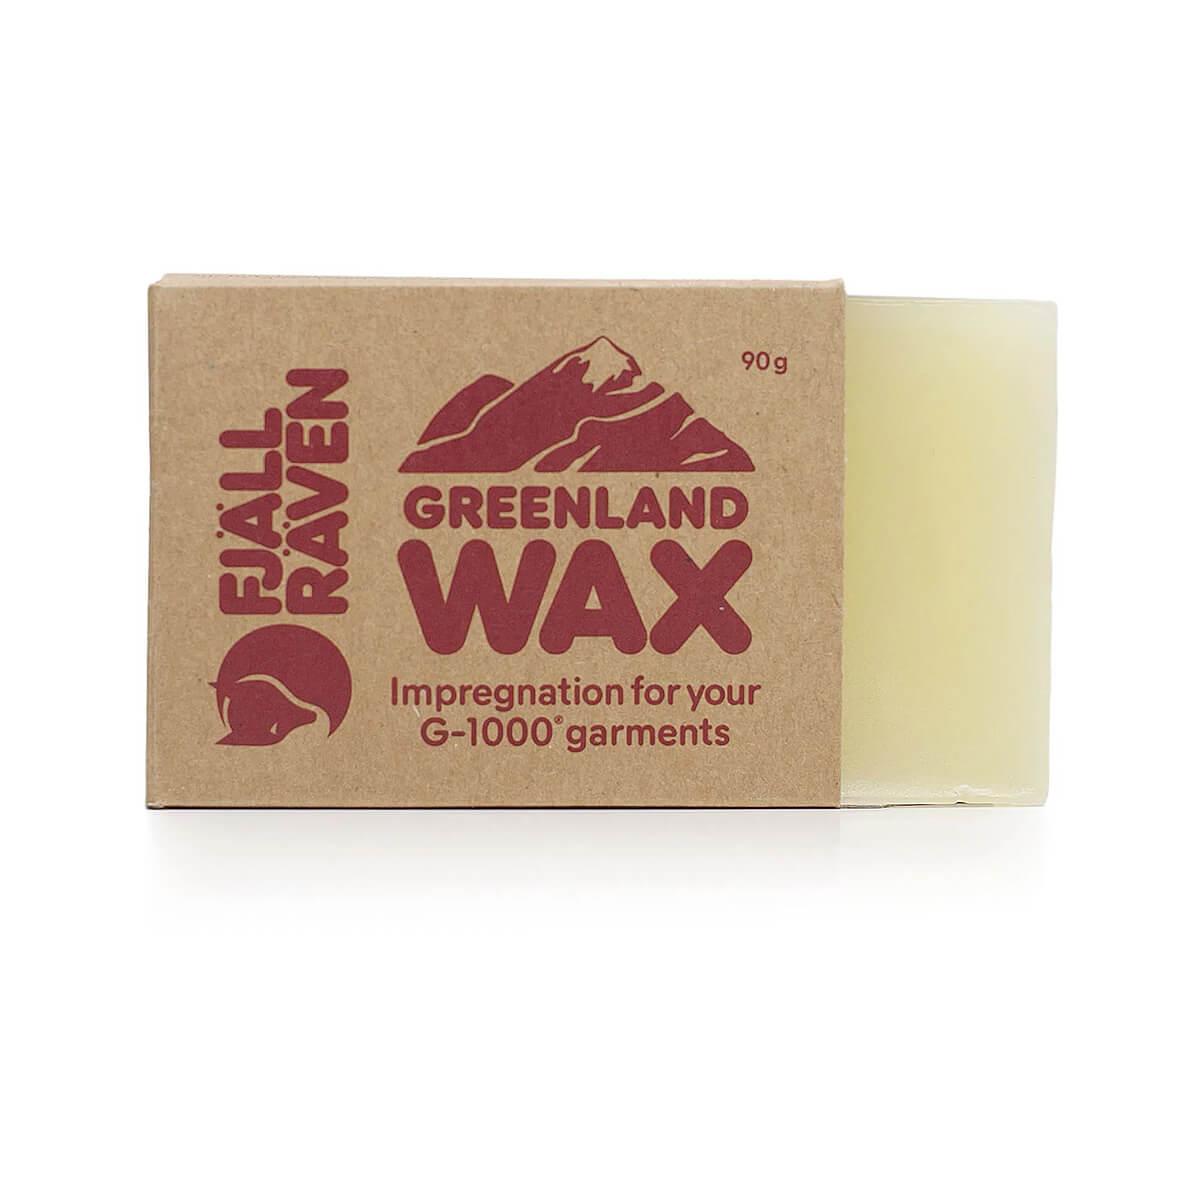  Greenland Wax